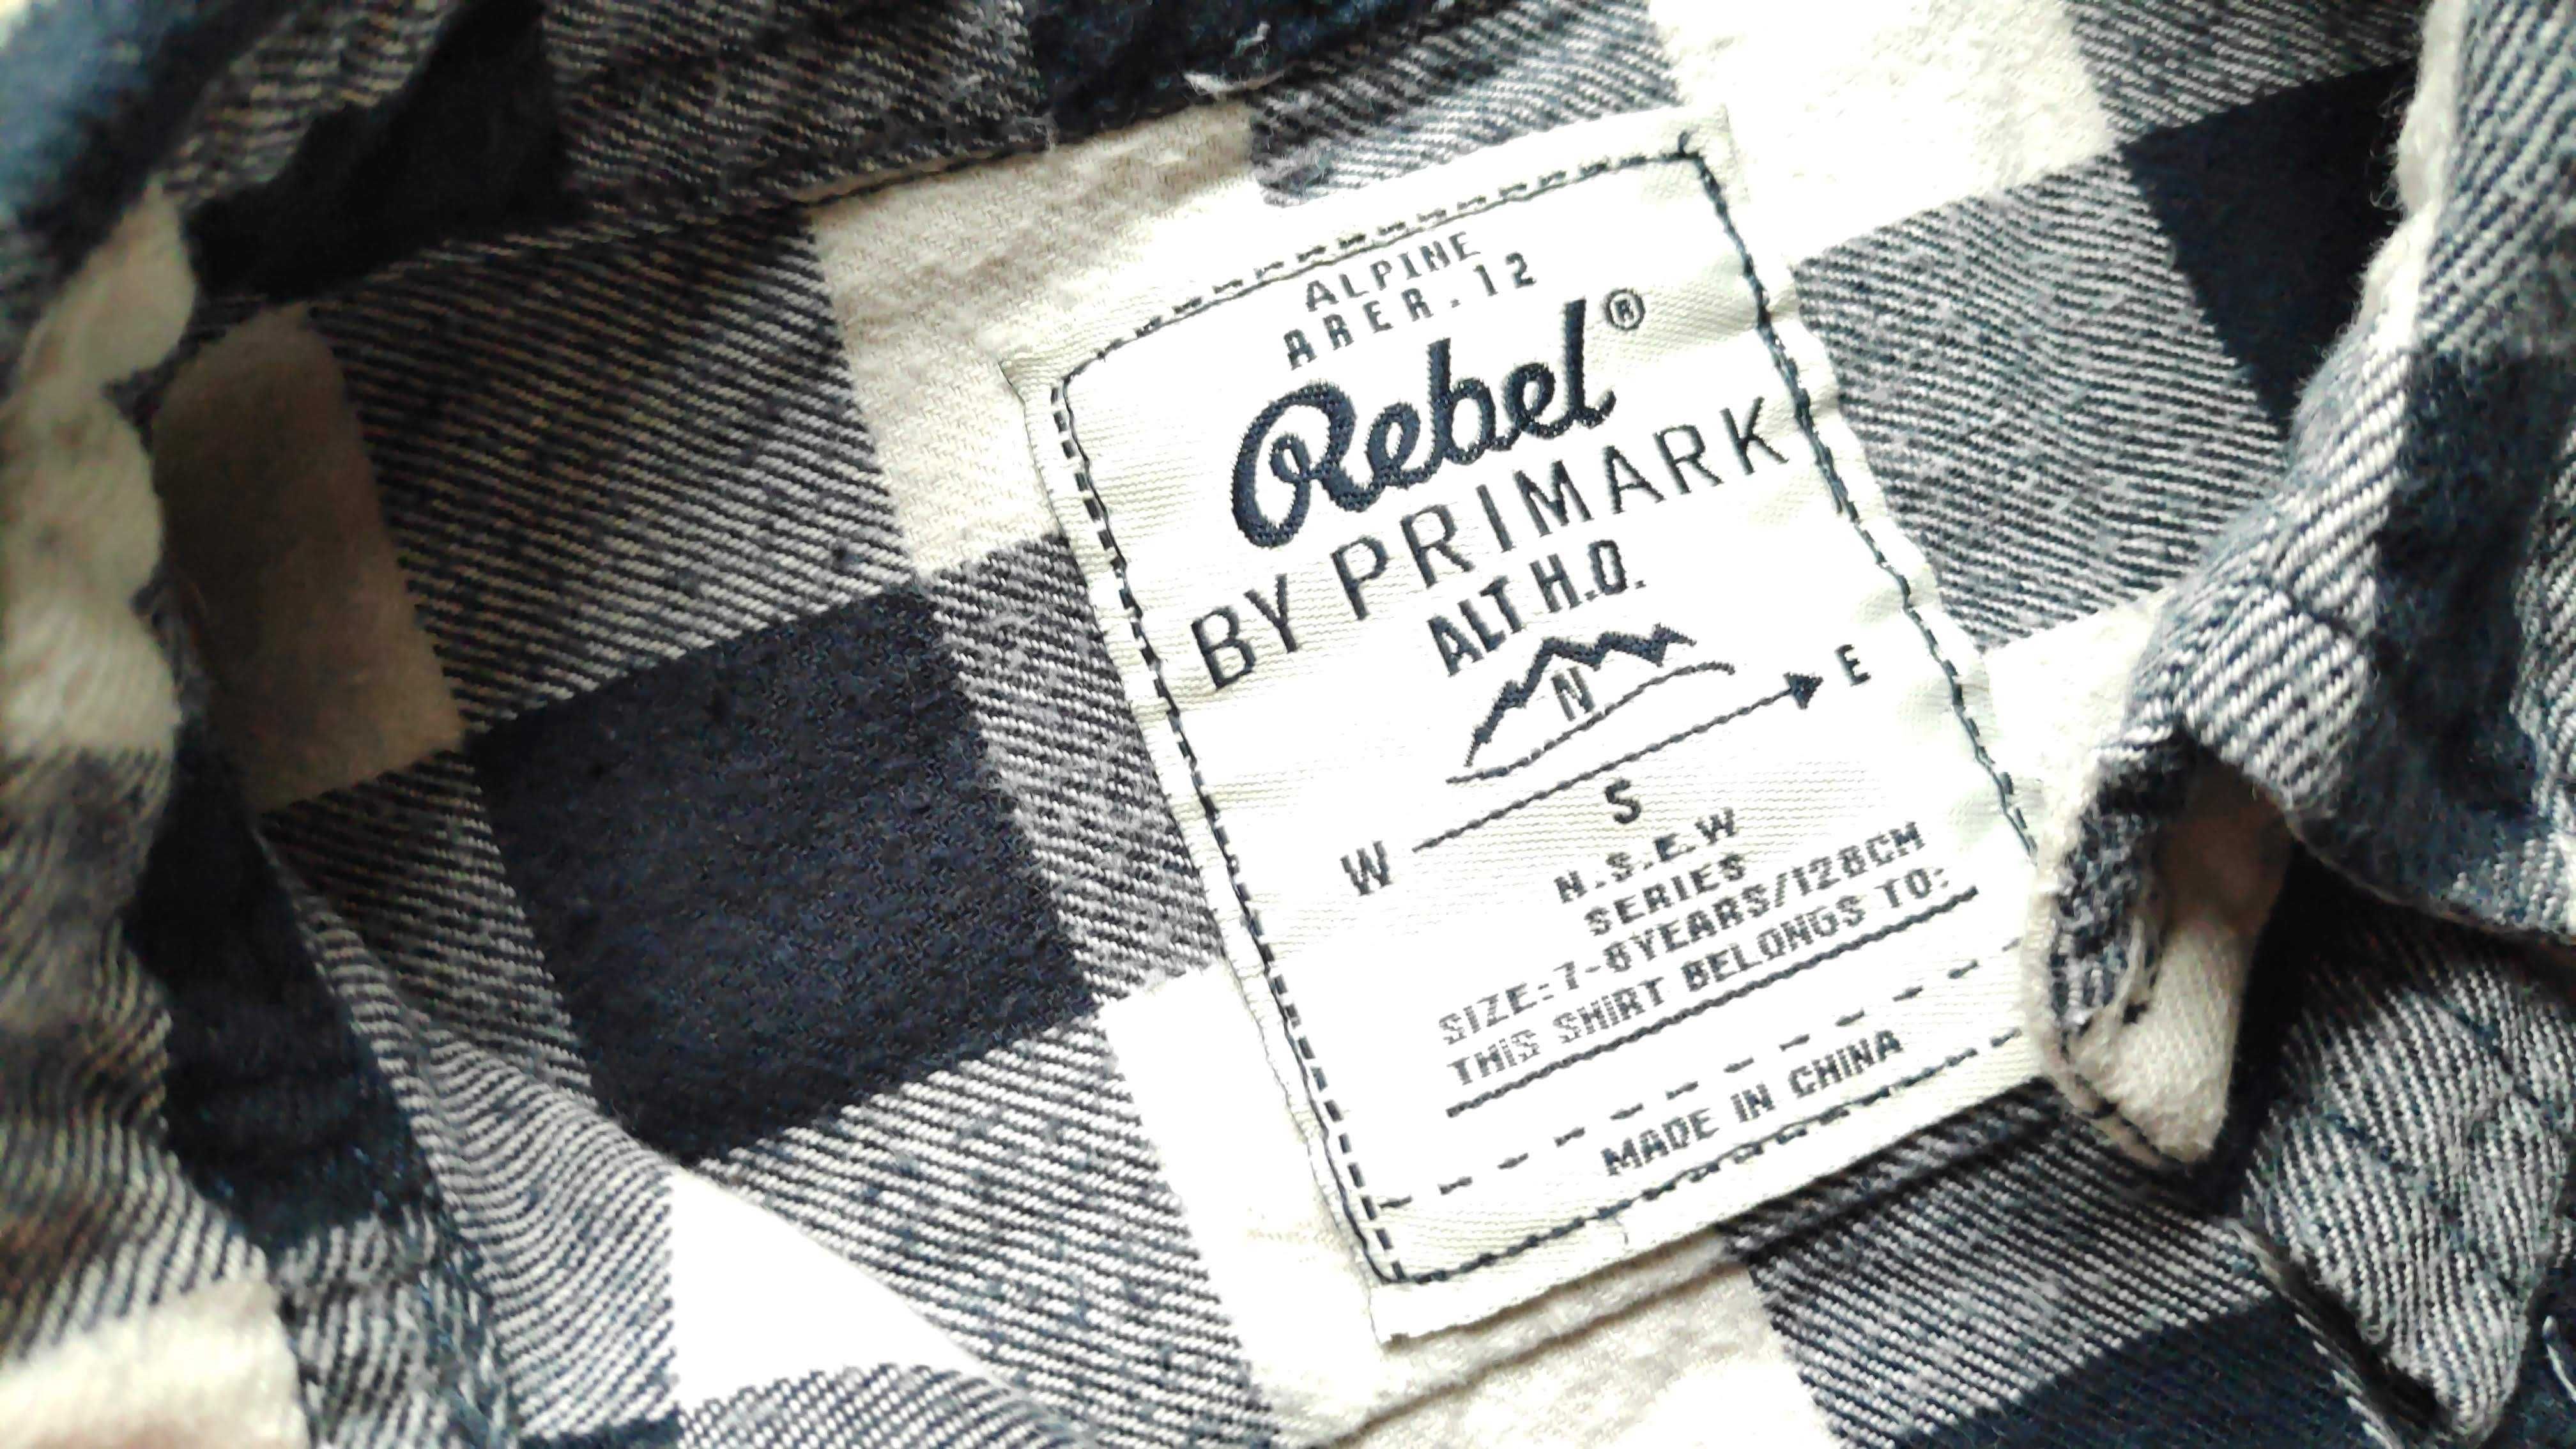 Komplet:  koszula Rebel flanelowa w kratę + czarne dżinsy, r. 128